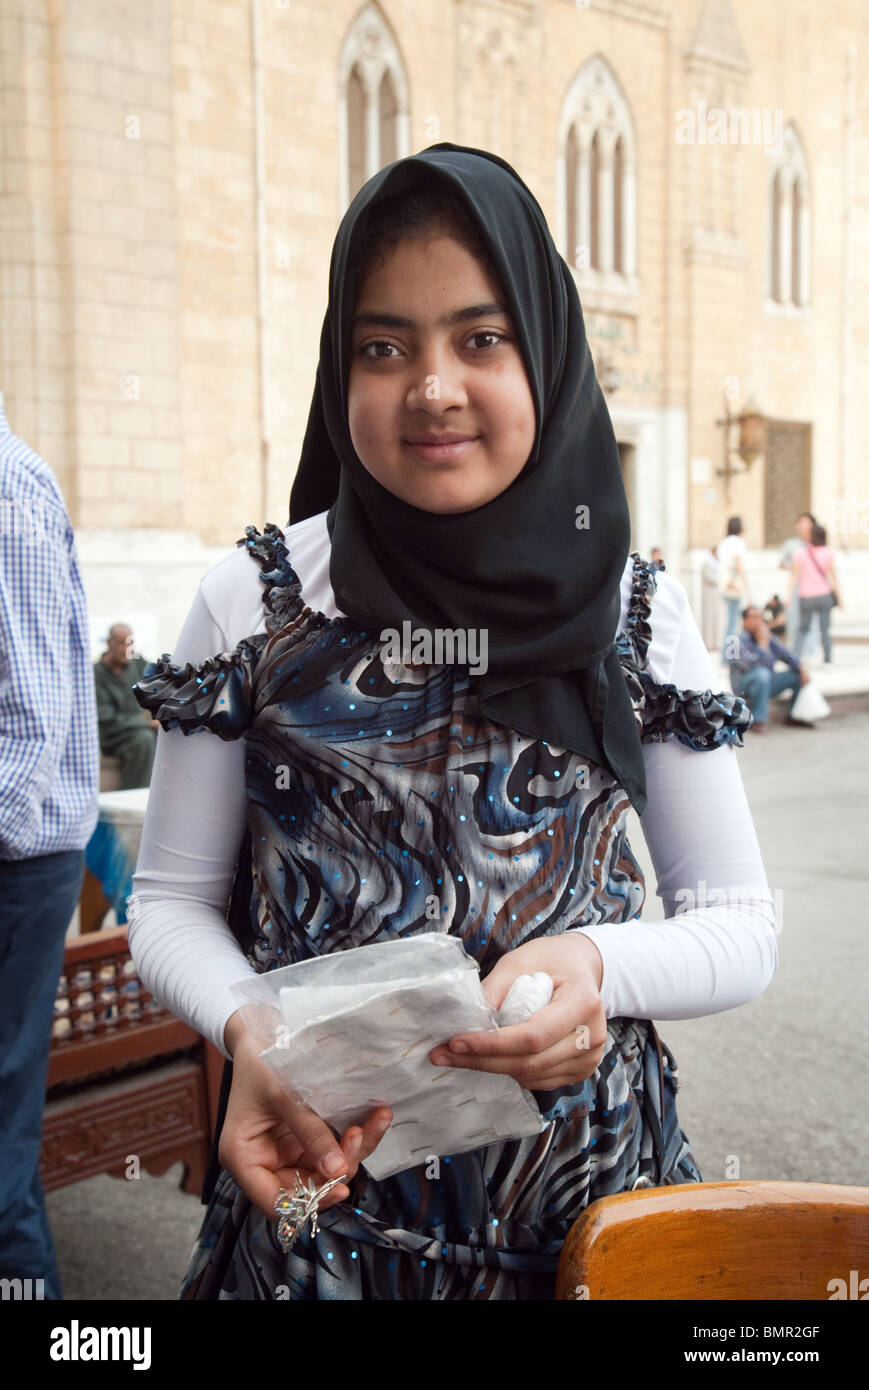 Junge ägyptische Frau im Alter von 12 Jahren, die Souvenirs an Touristen verkauft, Islamisches Viertel, Kairo, Ägypten Stockfoto